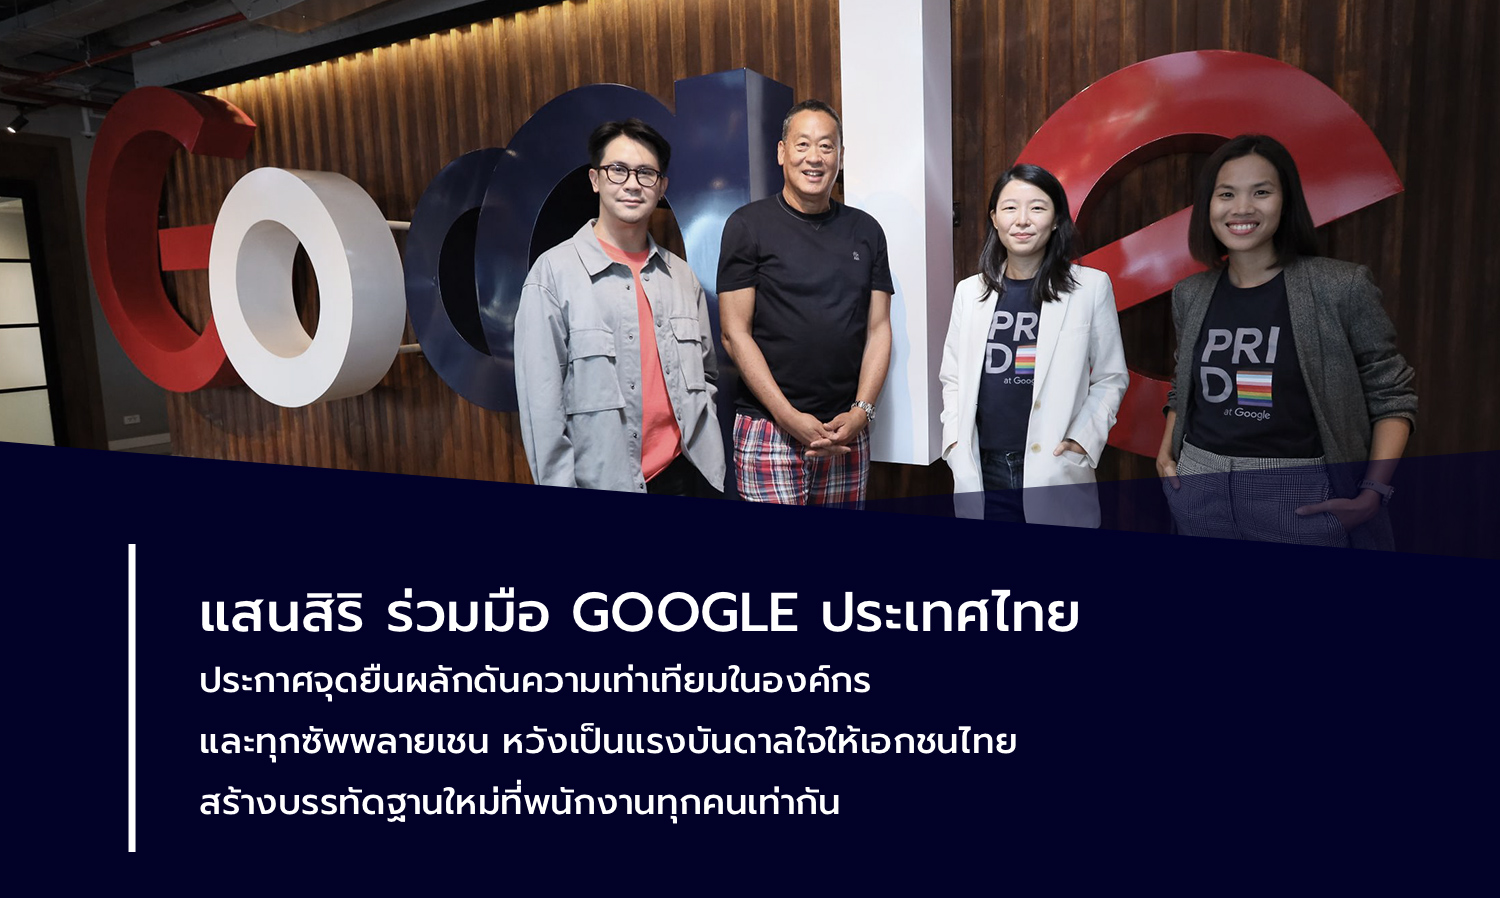 แสนสิริ ร่วมมือ Google ประเทศไทย ประกาศจุดยืนผลักดันความเท่าเทียมในองค์กร และทุกซัพพลายเชน หวังเป็นแรงบันดาลใจให้เอกชนไทย สร้างบรรทัดฐานใหม่ที่พนักงานทุกคนเท่ากัน